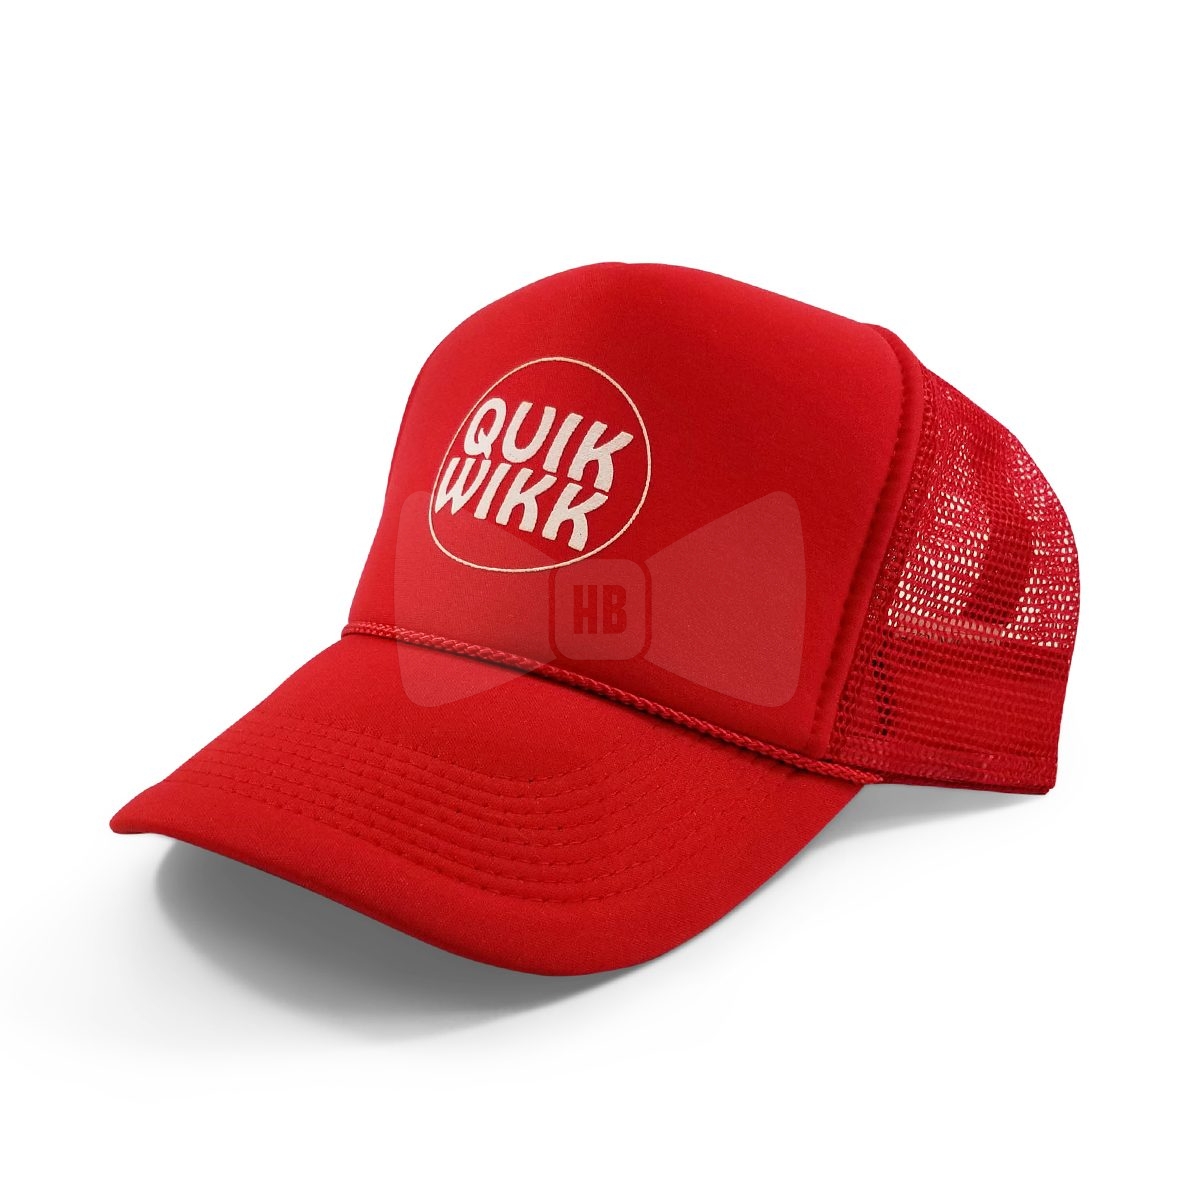 Quik Wikk Truckers Hat Red